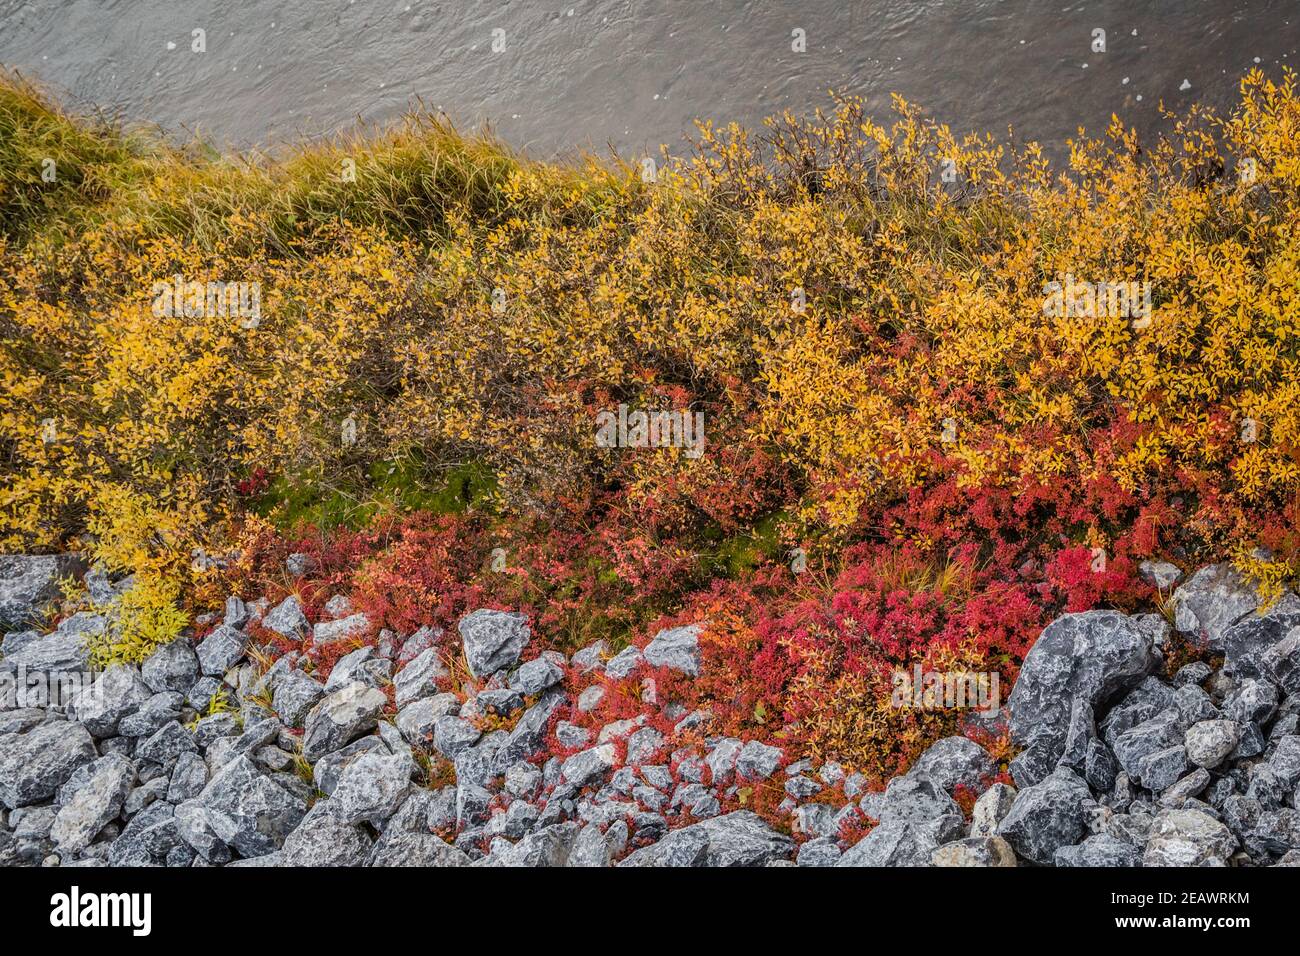 Végétation colorée dans l'arctique canadien, le long de la route Inuvik-Tuktoyaktuk à l'automne, dans les Territoires du Nord-Ouest, dans l'ouest de l'Arctique canadien. Banque D'Images